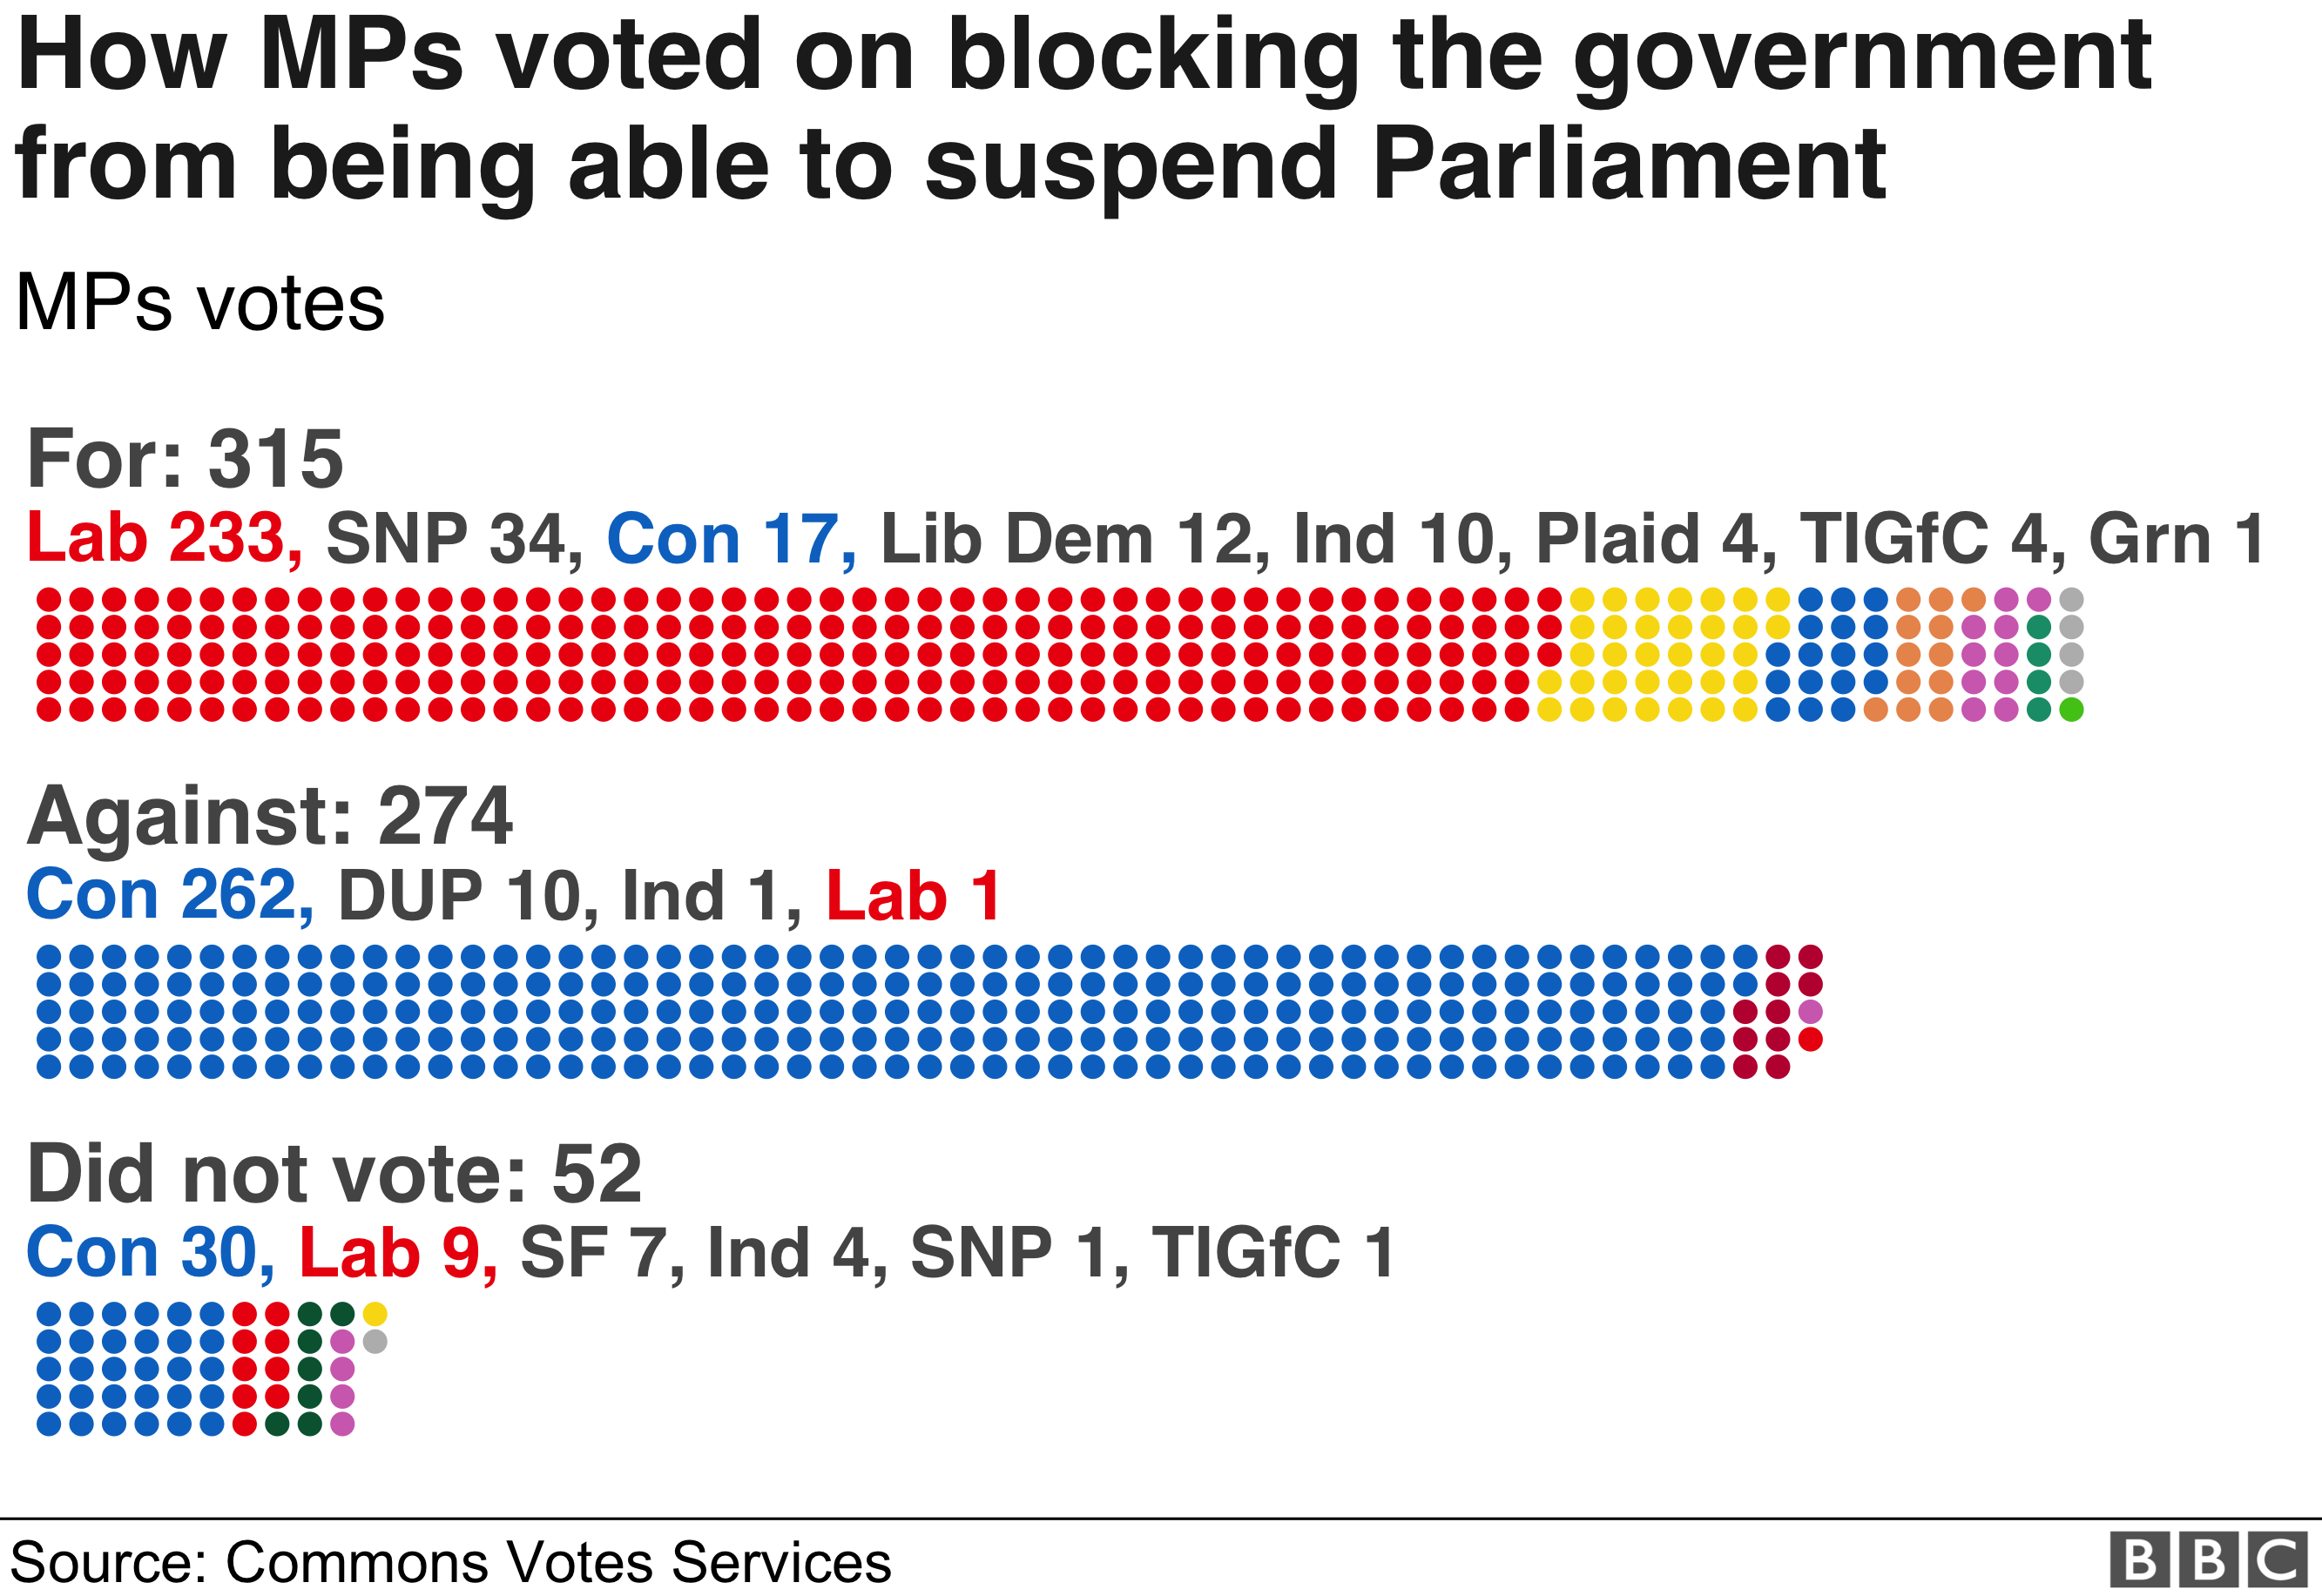 17 консерваторов взбунтовались, а 52 депутата не проголосовали, поскольку правительство утратило возможность приостановить работу парламента, чтобы добиться Брексита без сделки